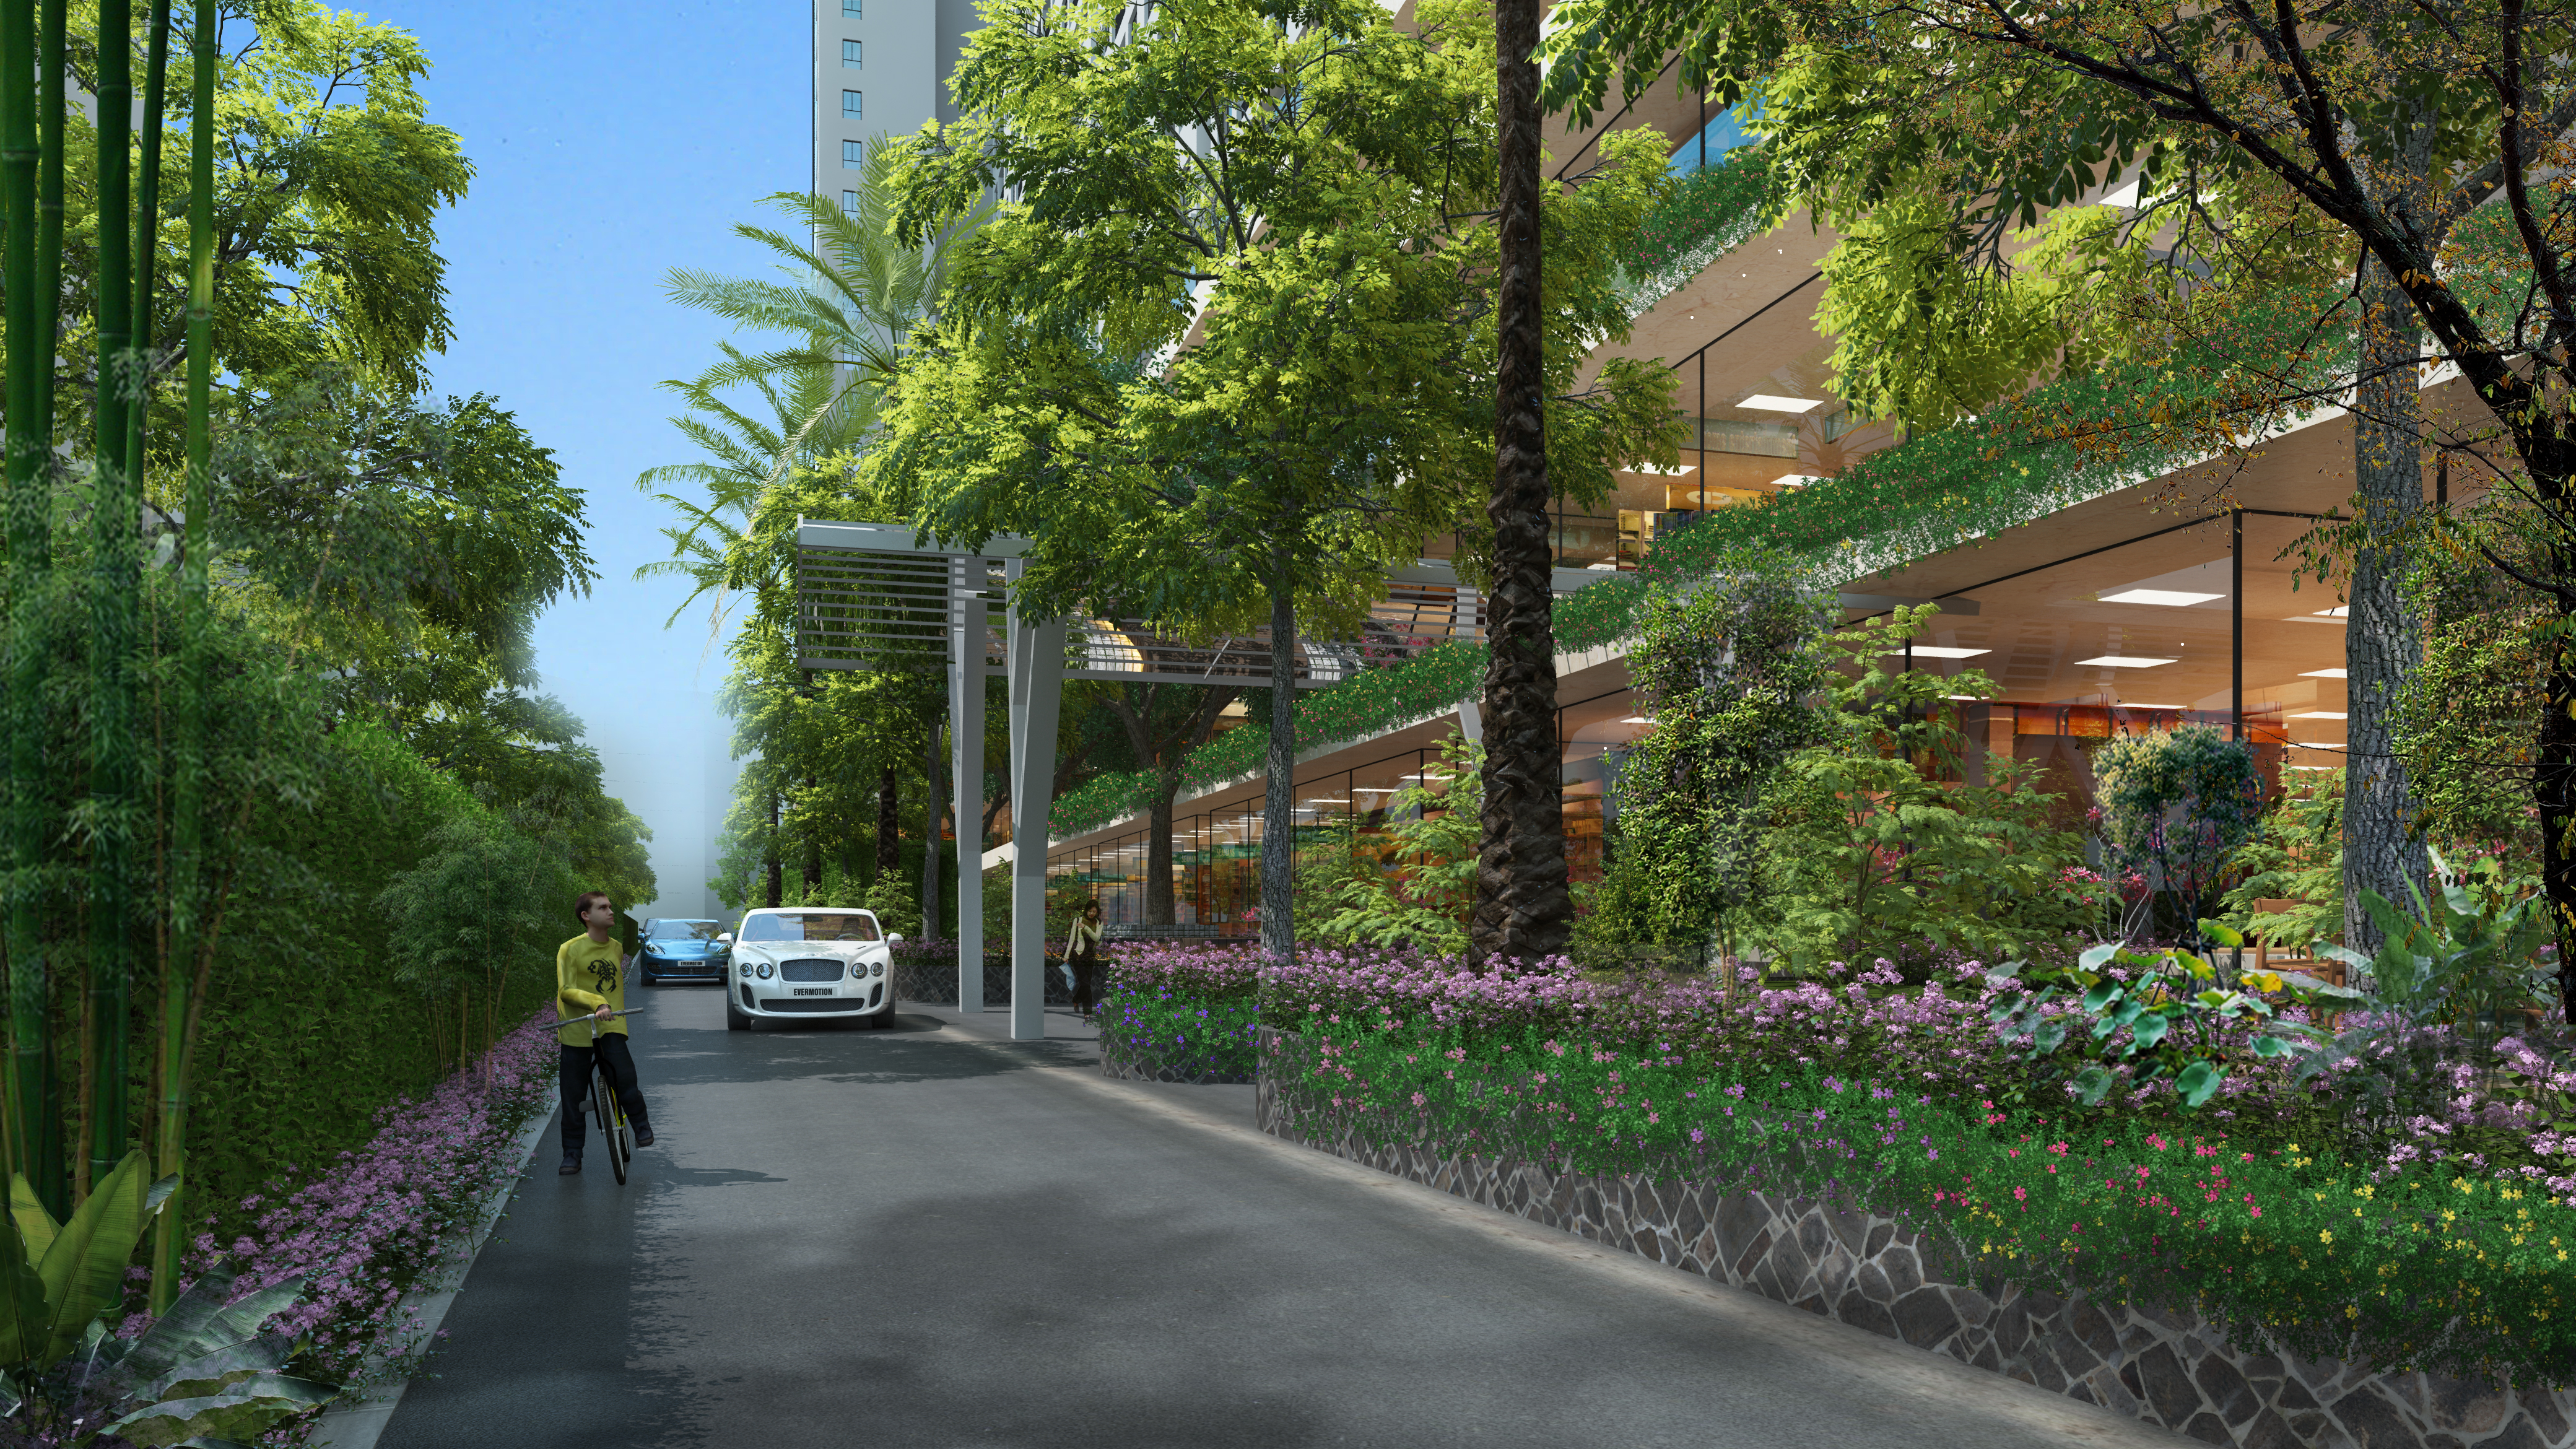 Hệ thống cây xanh 3 lớp với những căn hộ tầm nhìn hướng hồ góp phần tạo nên cuộc sống trong lành và đẳng cấp ở EcoLife Capitol.